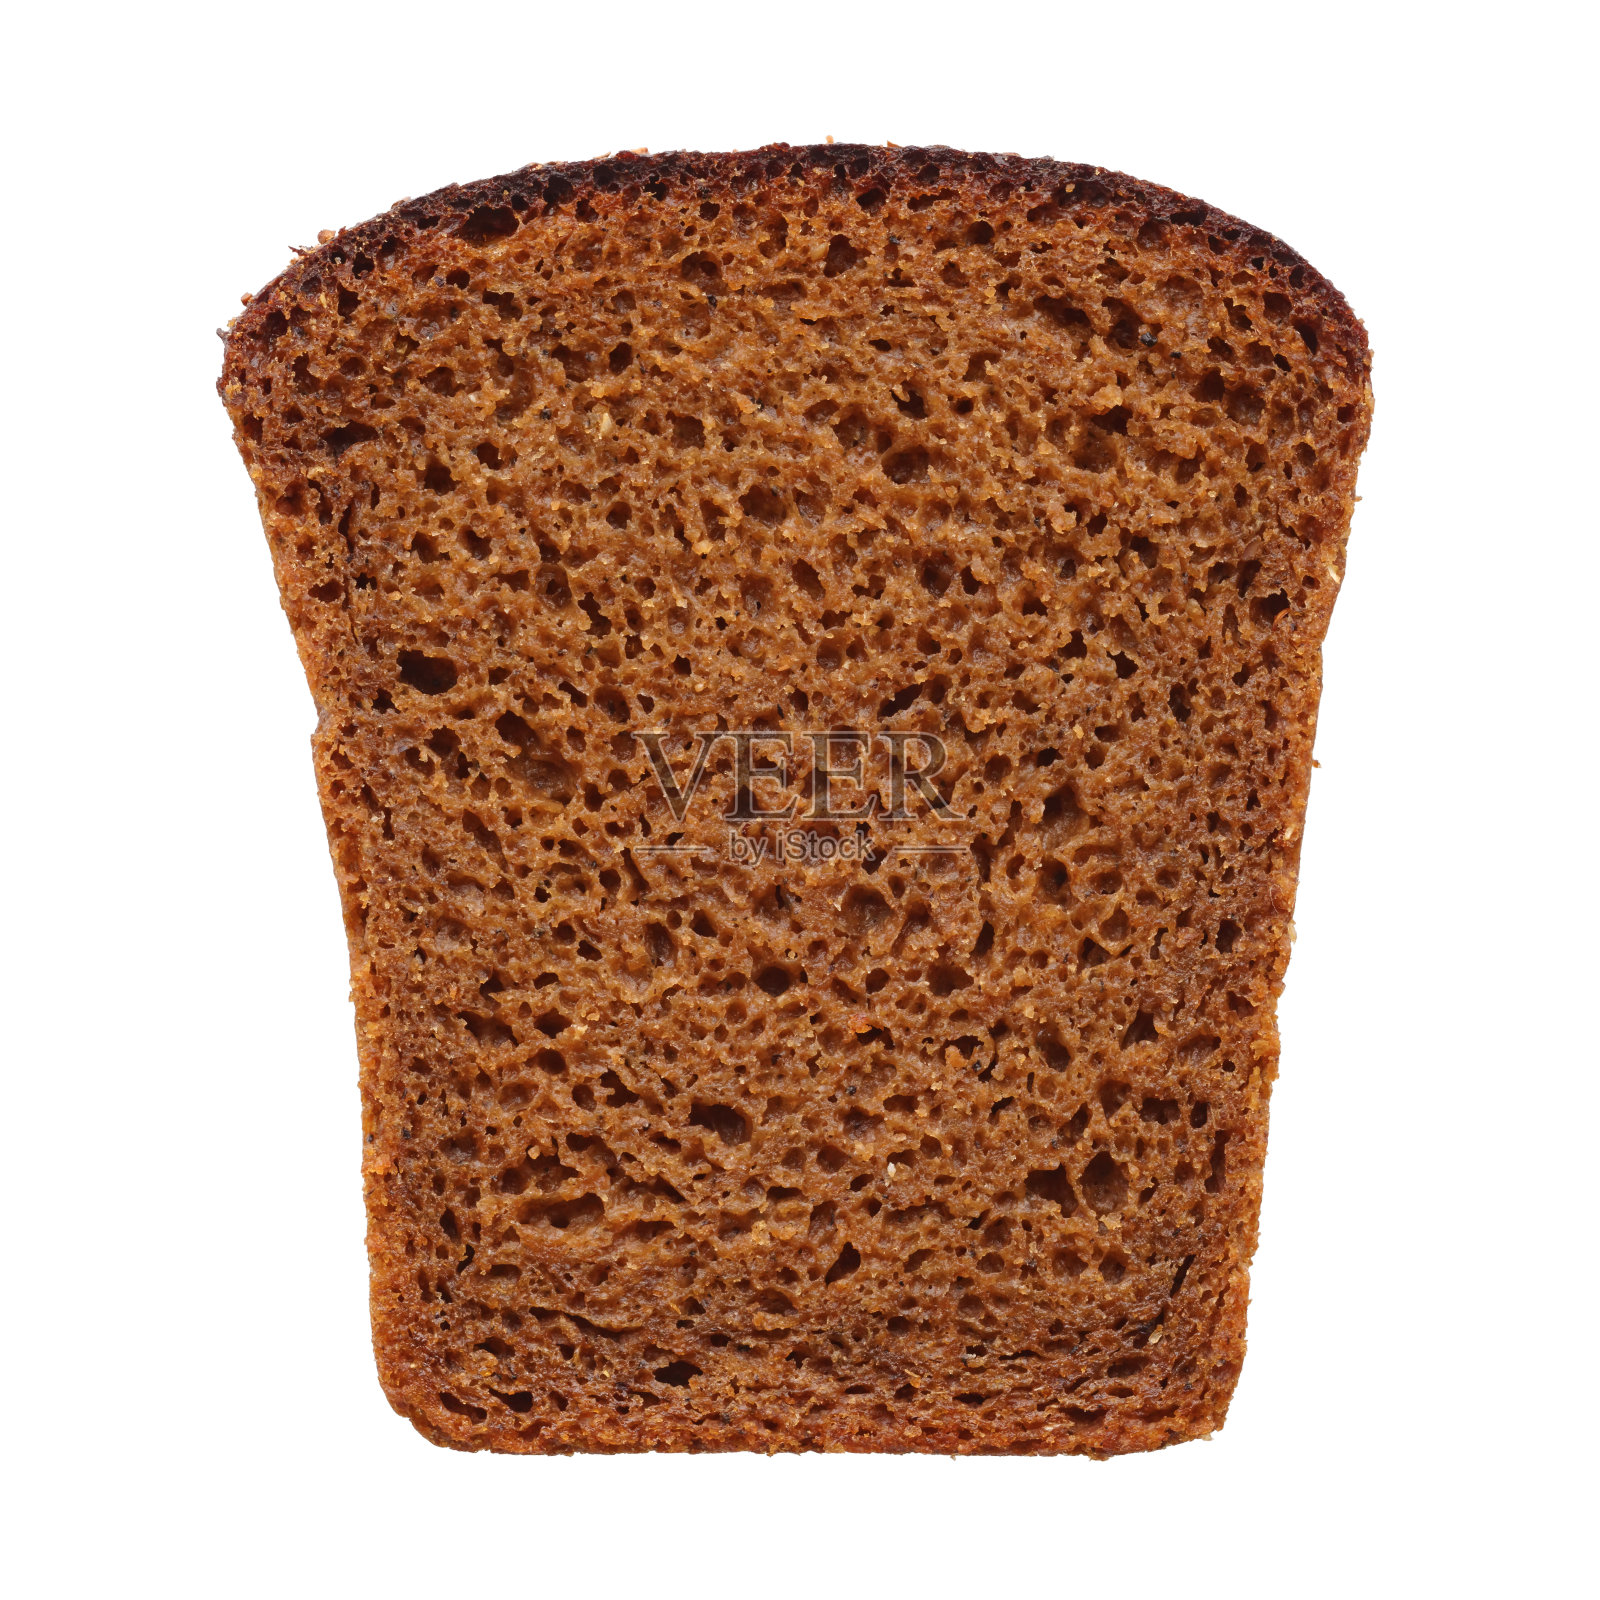 一片新鲜的黑麦面包照片摄影图片